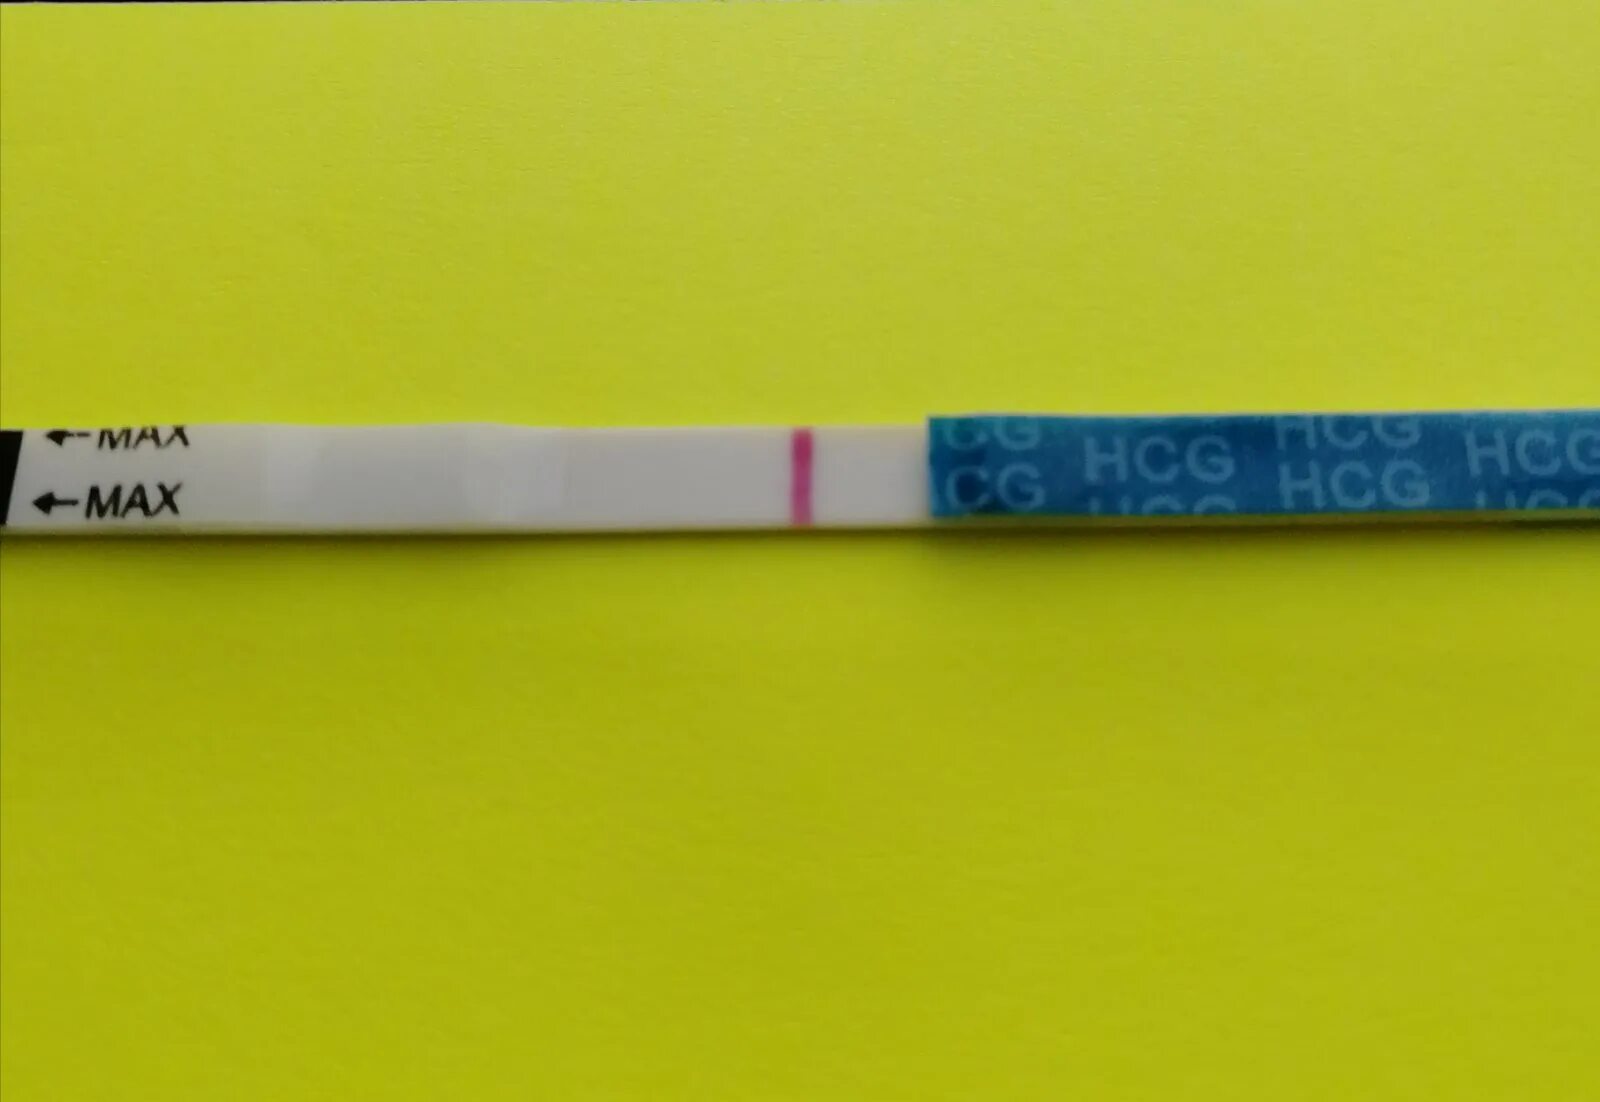 Tests 22 ru. 22 ДЦ тест. 22 ДЦ тест слабоположительный. Тест на беременность на 22 ДЦ слабоположительный. Фото тестов на 22 ДЦ.